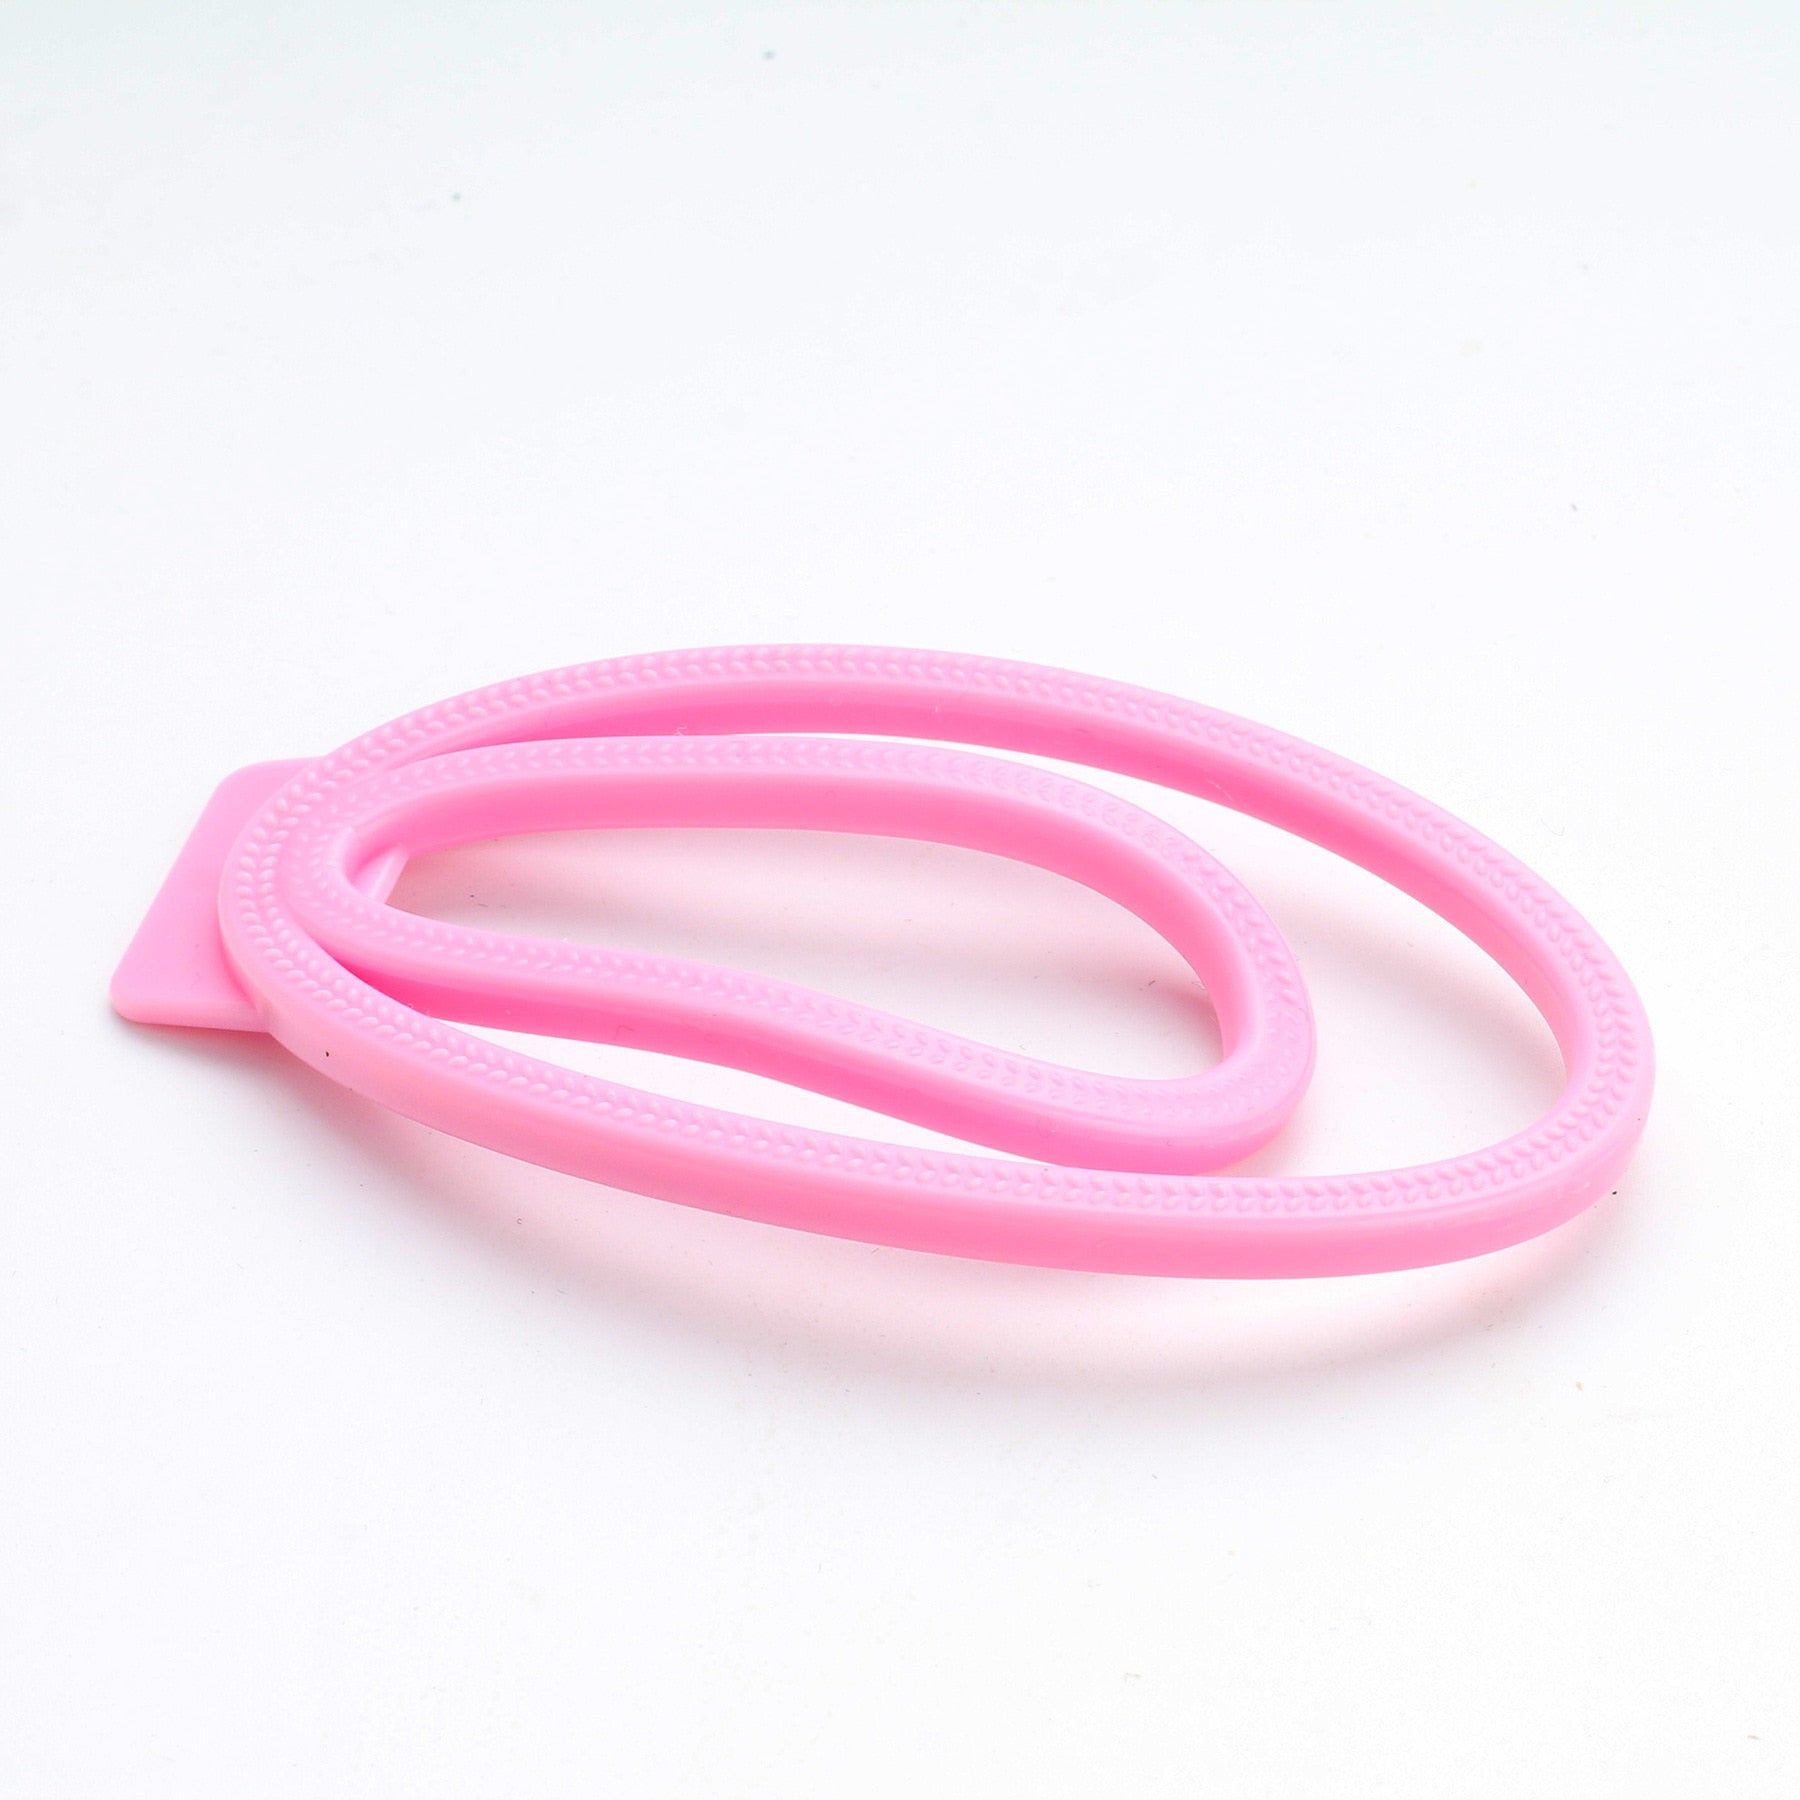 Plastic Fufu Chastity Clip – S-Supplies